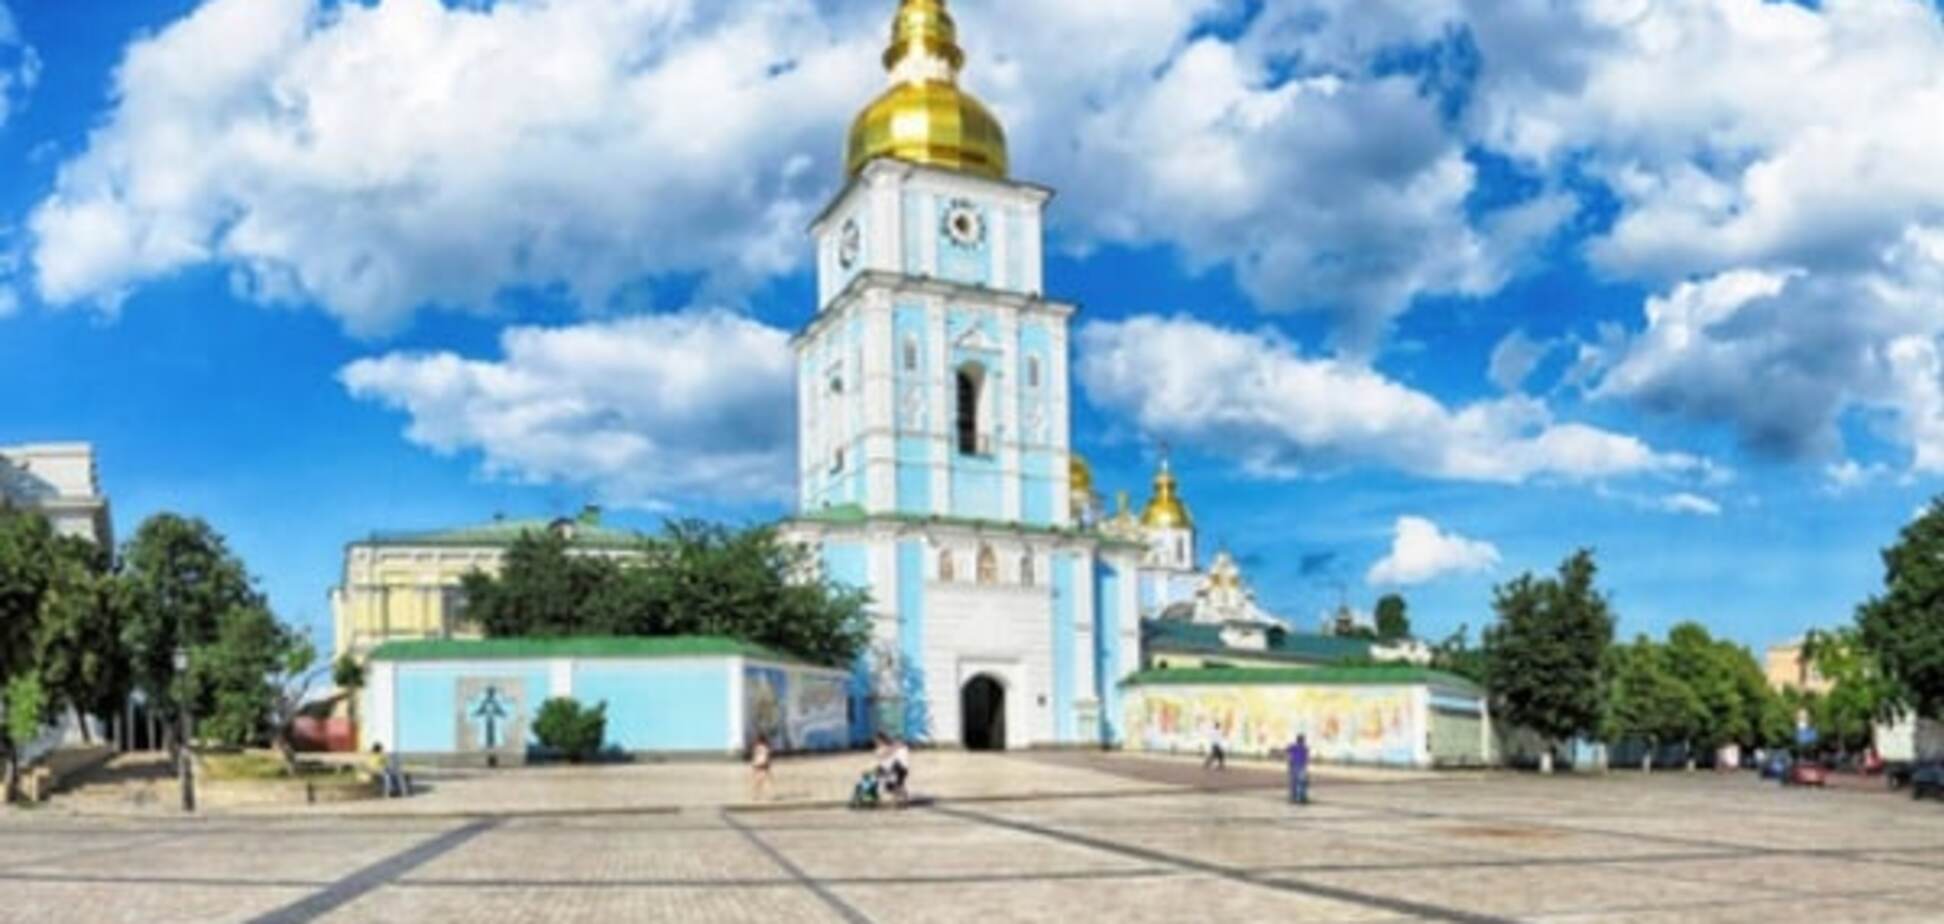 Будущее Киева: под Михайловской площадью могут построить паркинг